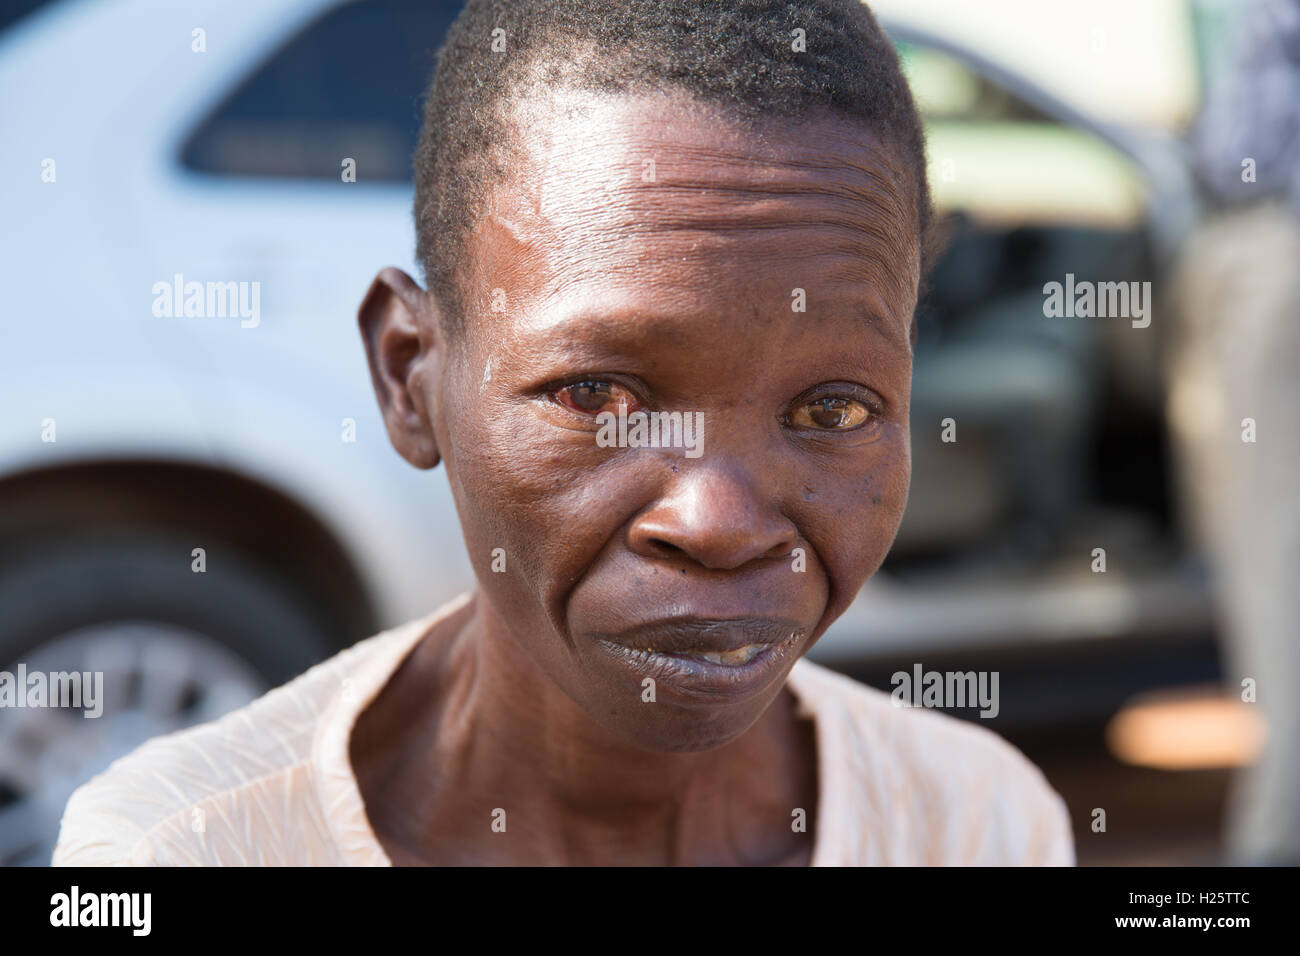 Ribaue Krankenhaus, Ribaue, Provinz Nampula, Mosambik, August 2015: Rosalina Alberto nach ihrer ersten Kataraktoperation hat Anblick auf ihrem rechten Auge wiederhergestellt. Foto: Mike Goldwater Stockfoto